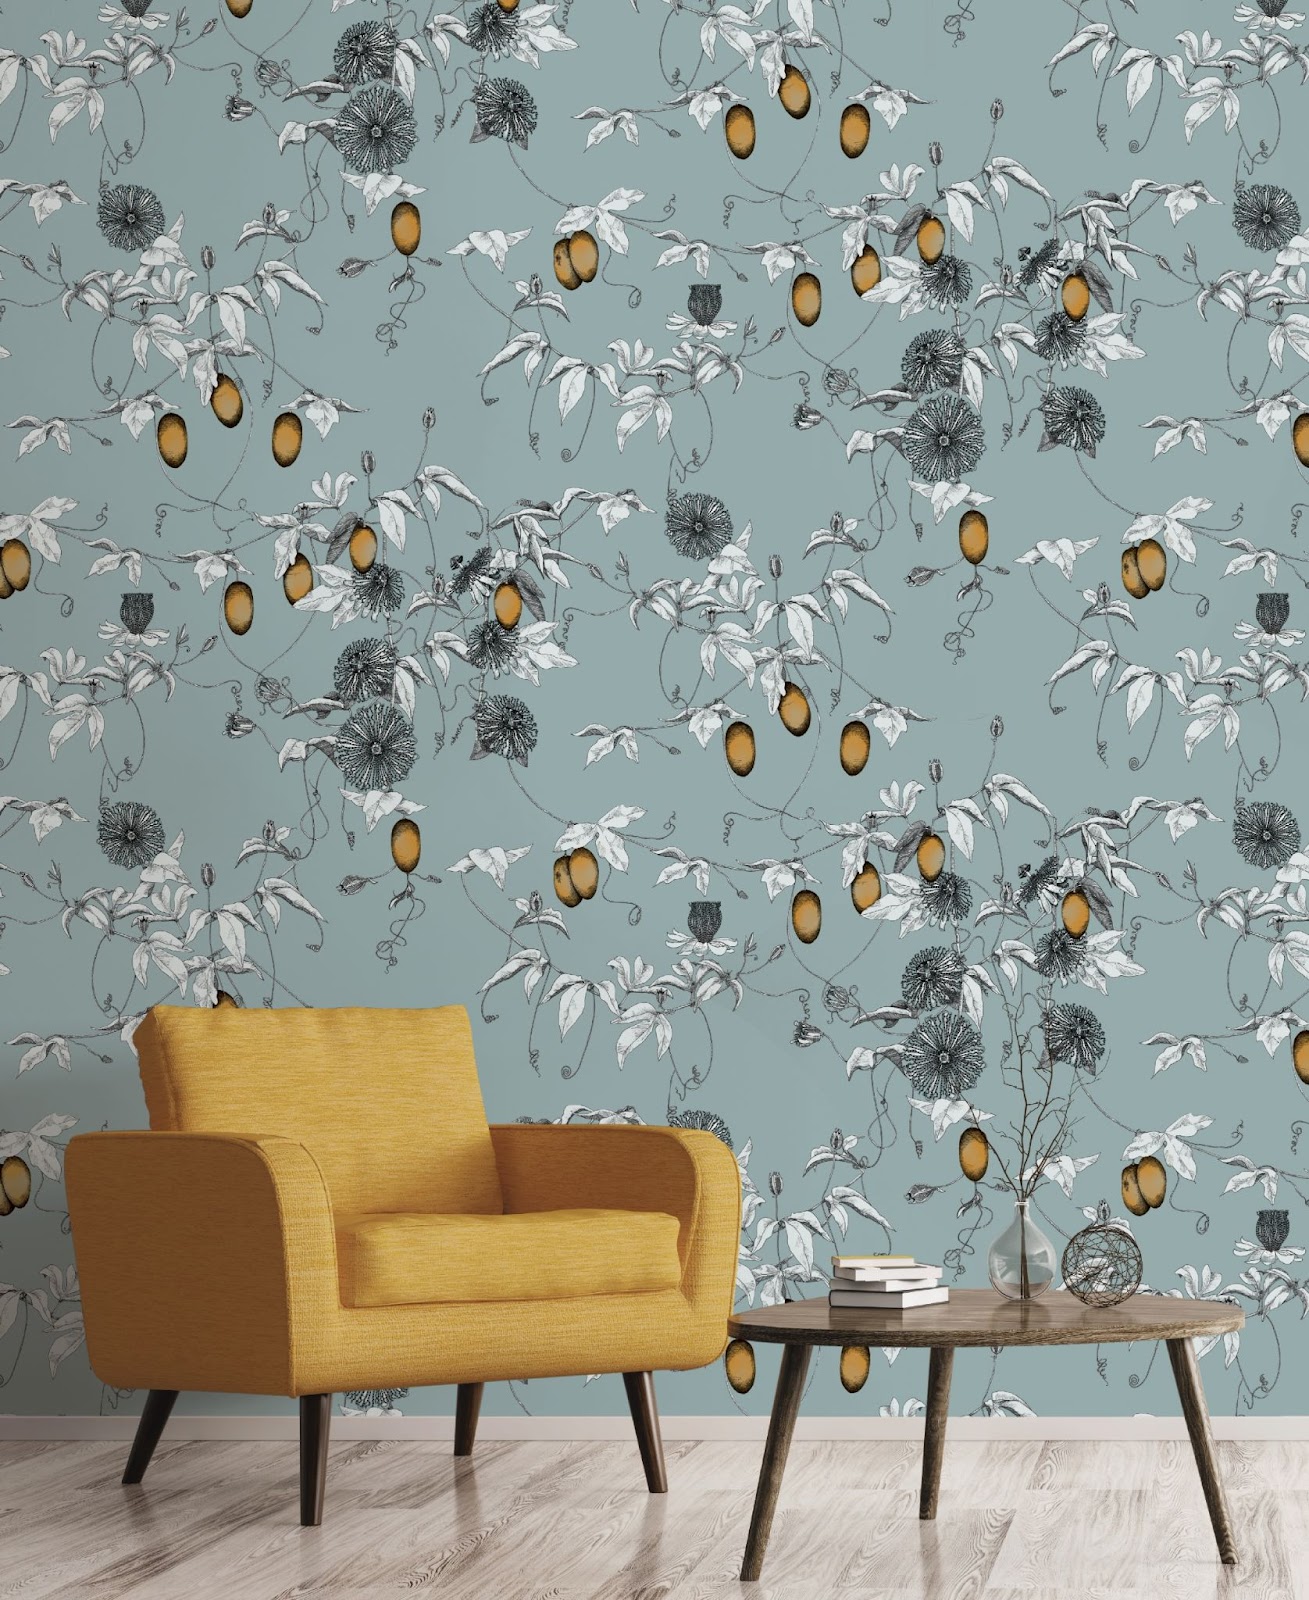 Skardu Patterned Wallpaper Design